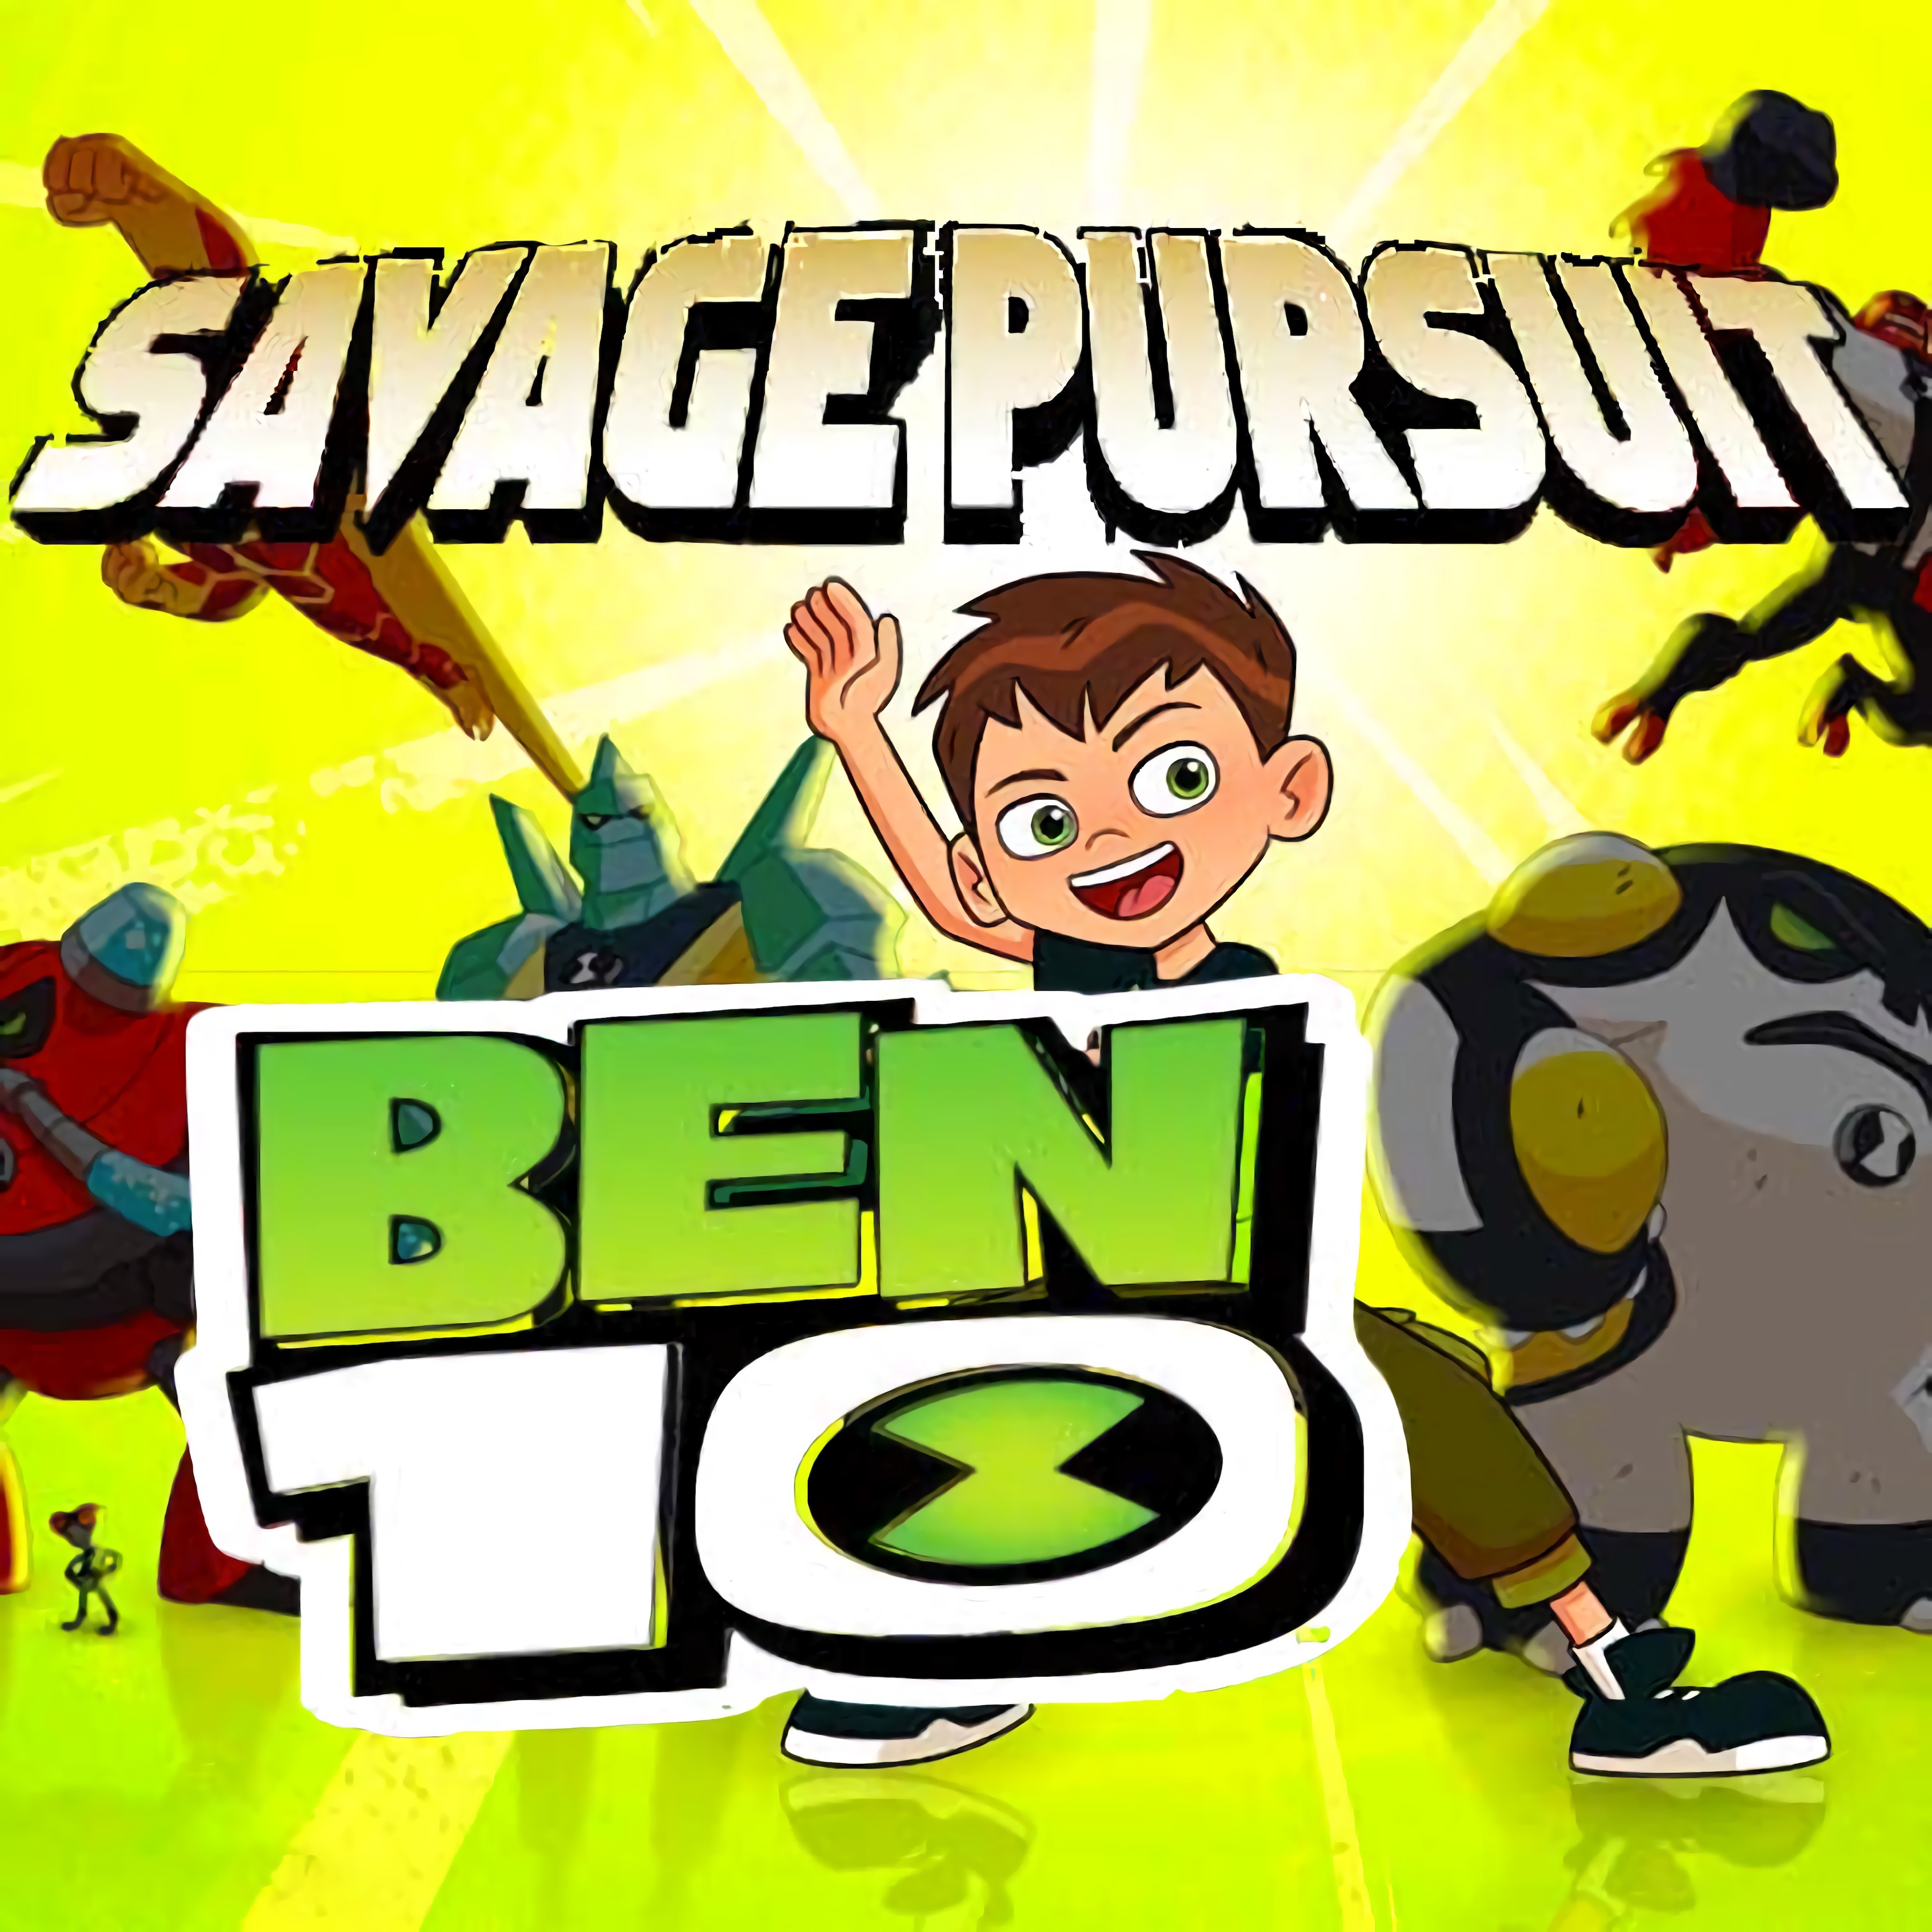 Savage Persuit - Ben 10